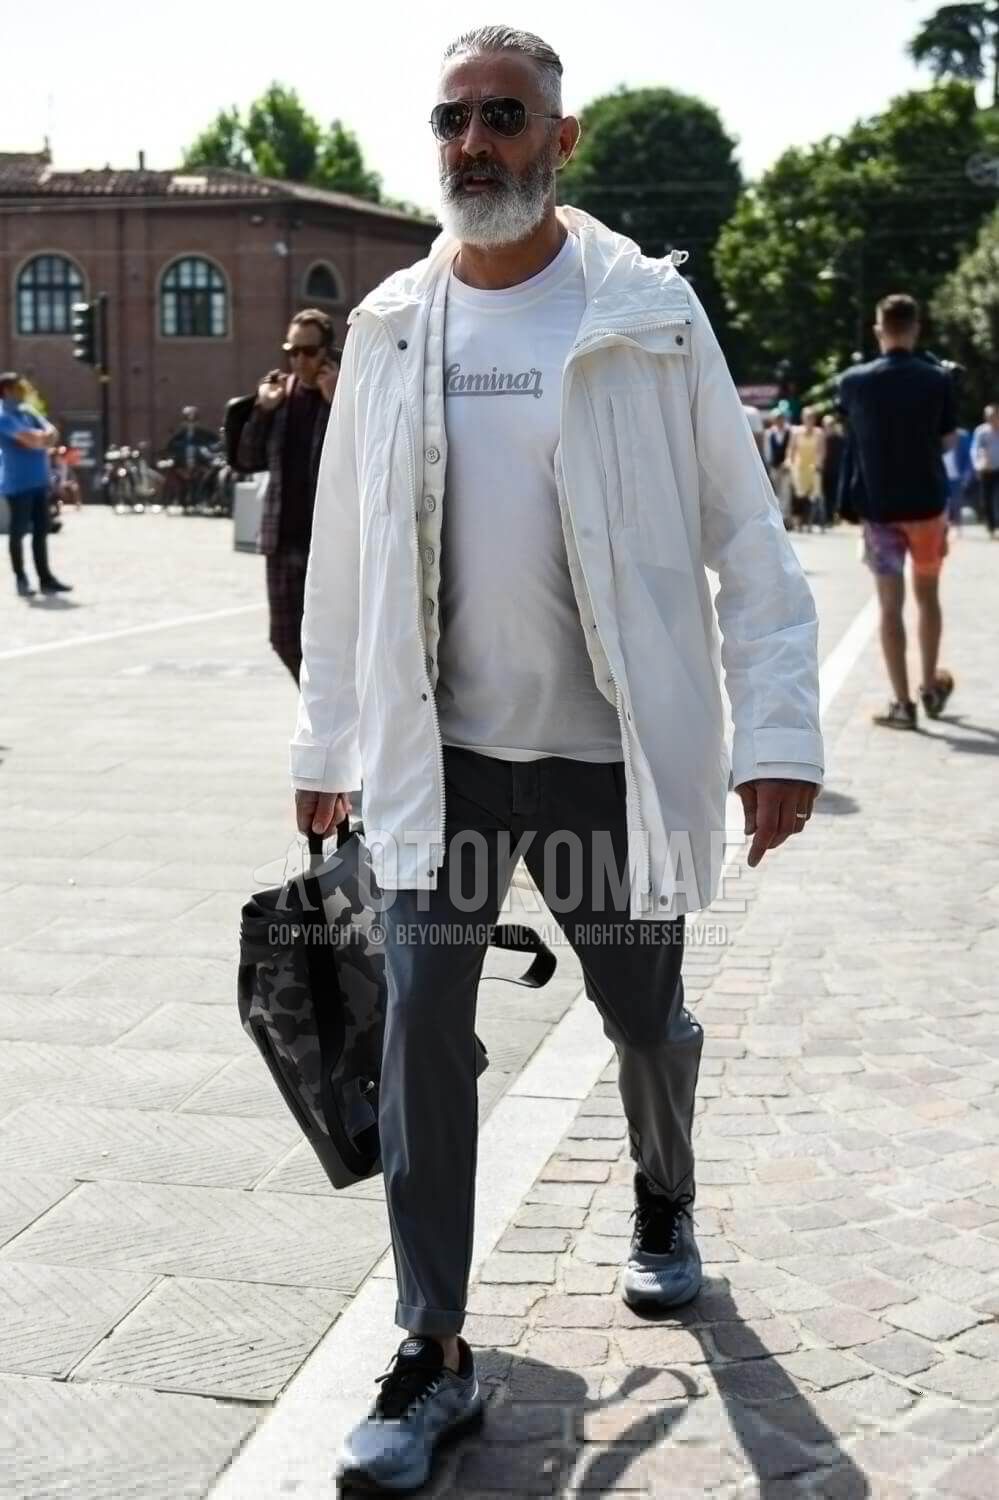 白コート メンズ特集 大人の男が参考にしたい注目の着こなしとアイテムを紹介 メンズファッションメディア Lbhclbhc 男前研究所